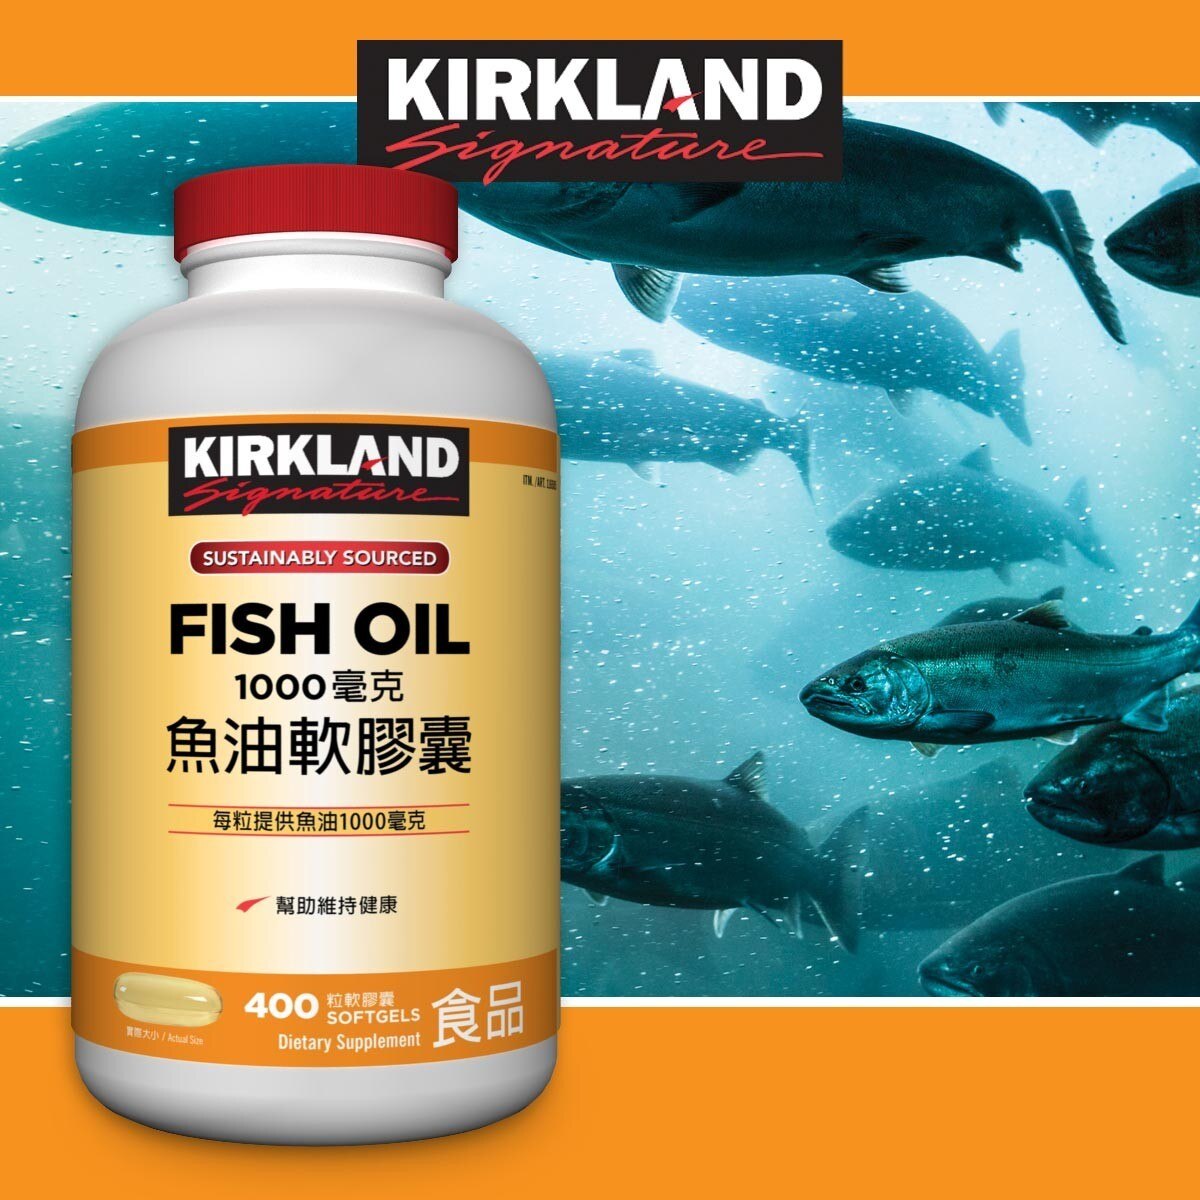 Kirkland Signature 科克蘭 魚油軟膠囊 1000毫克 400粒